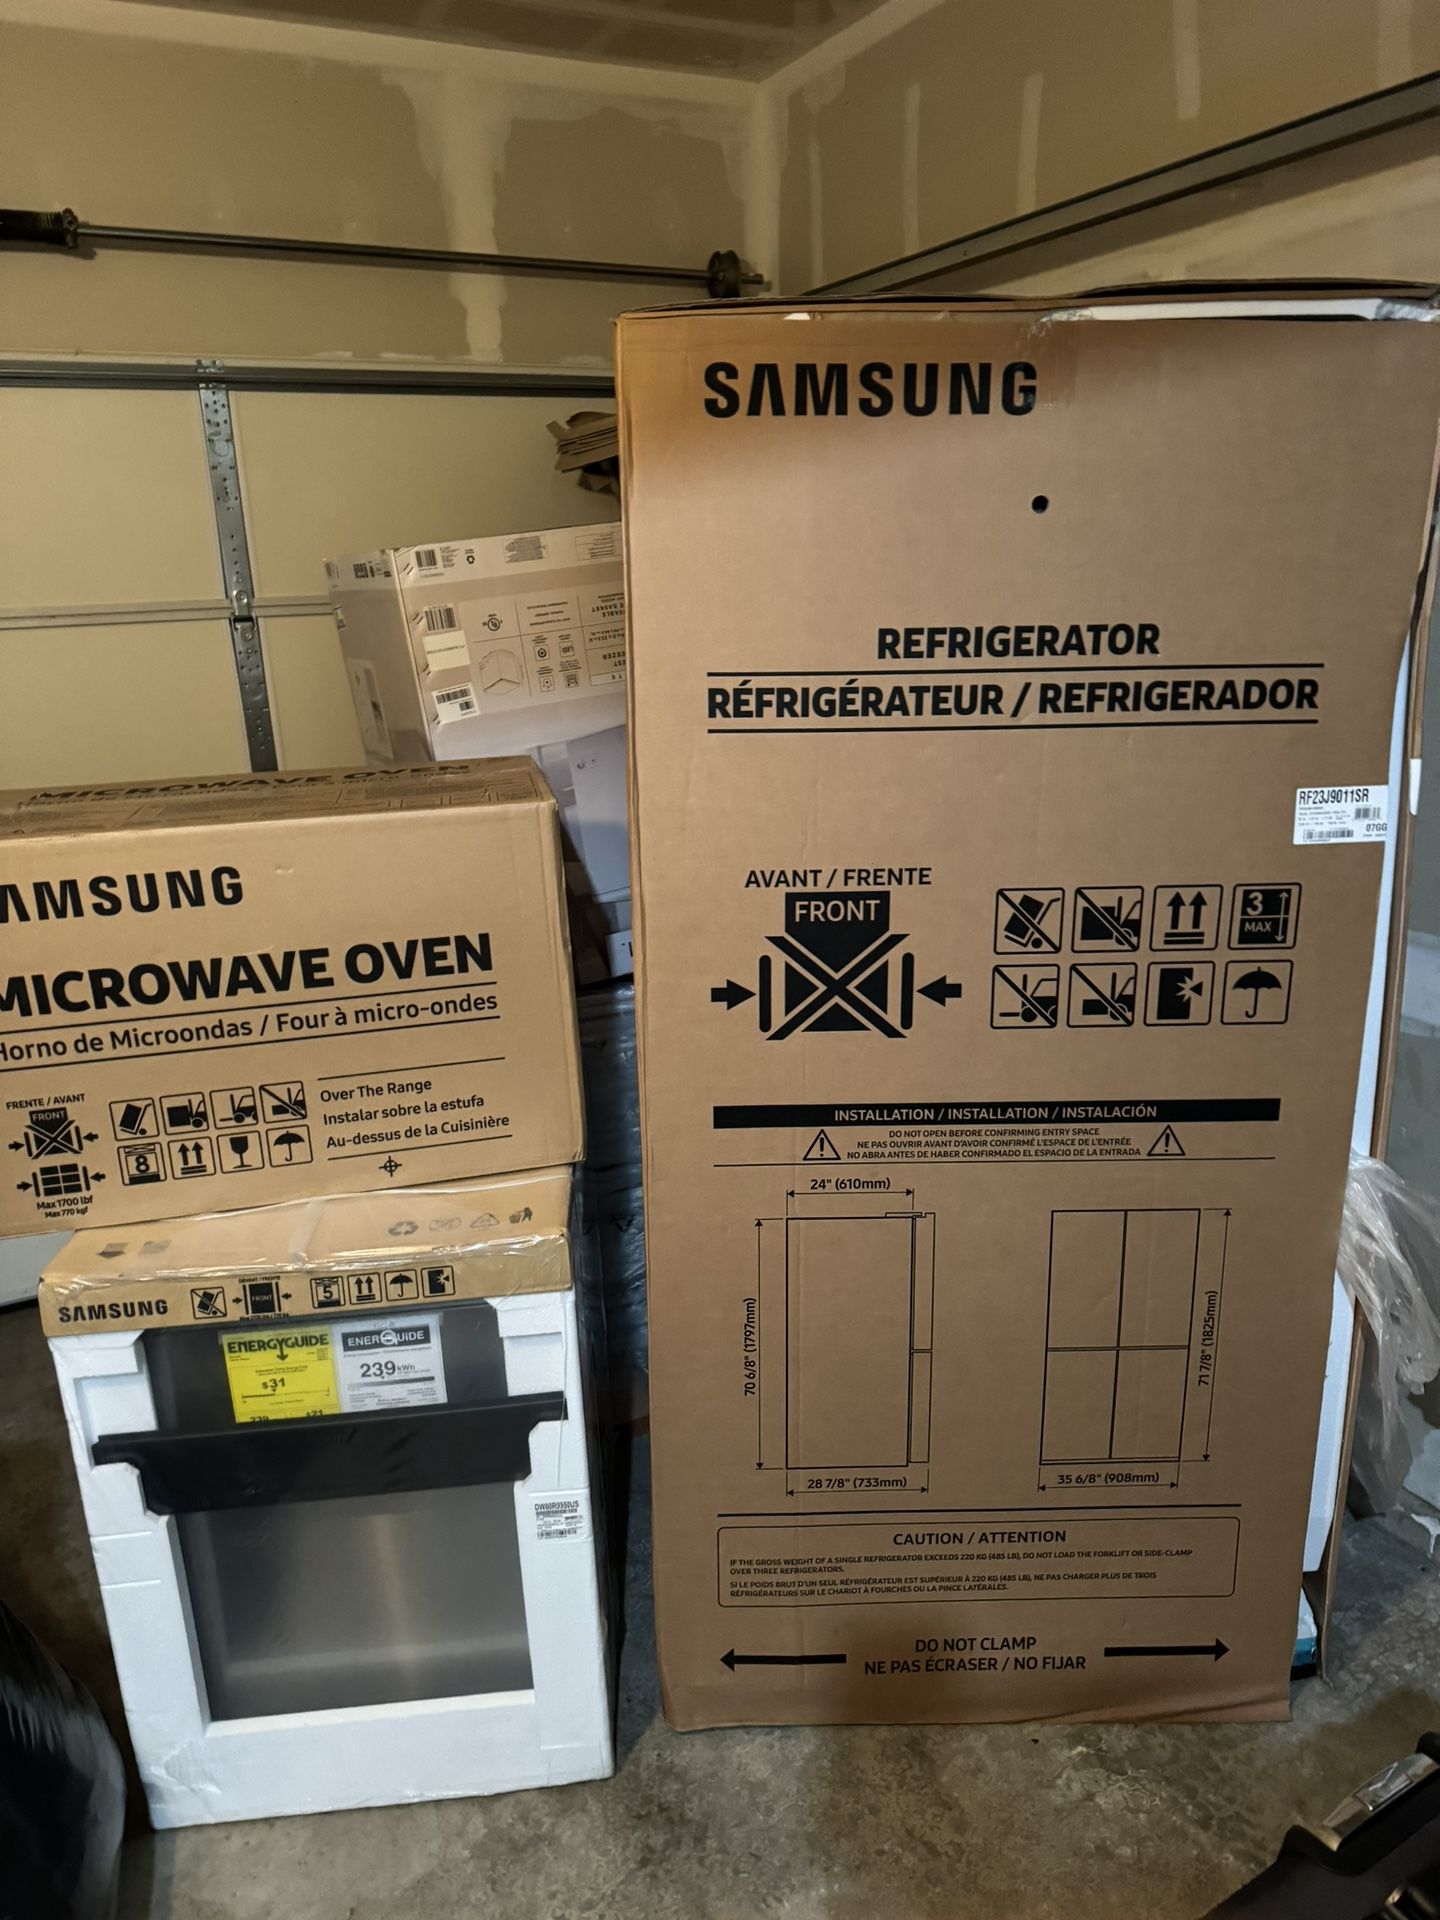 Samsung Kitchen Microwave Oven, Refrigerator, Dishwasher